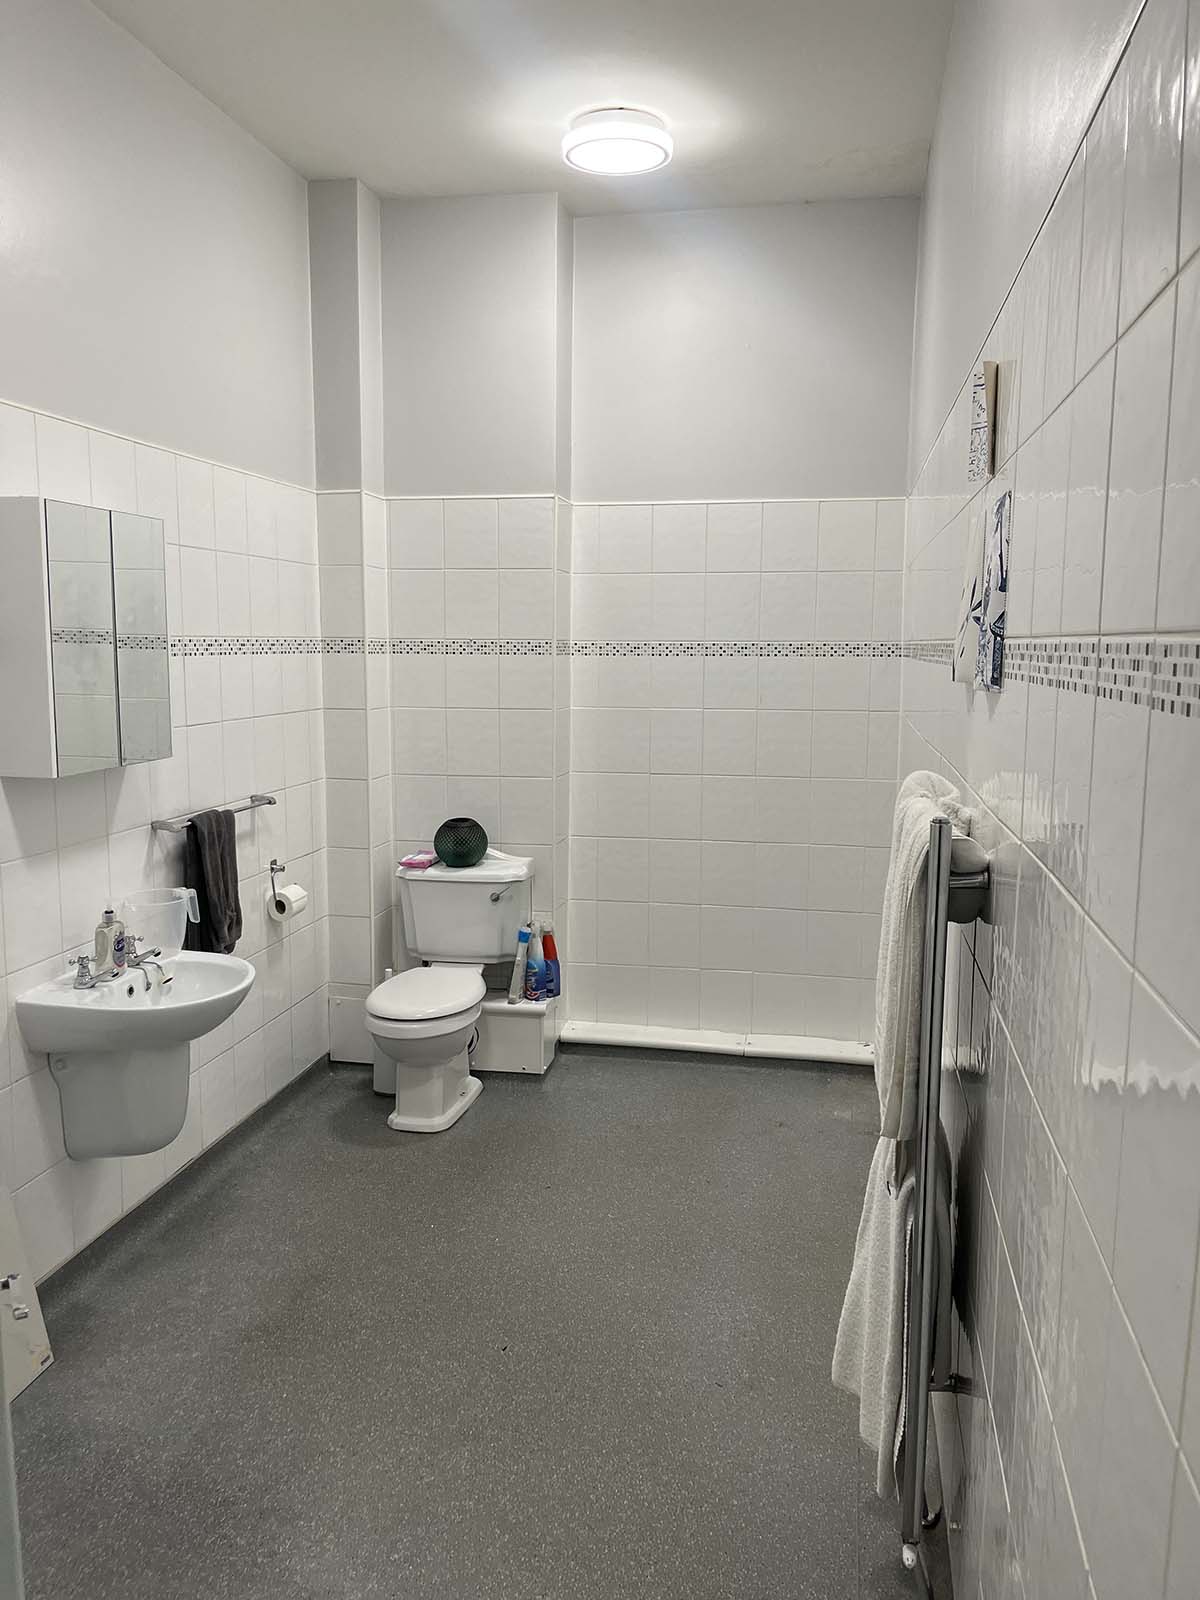 A disabled access bathroom